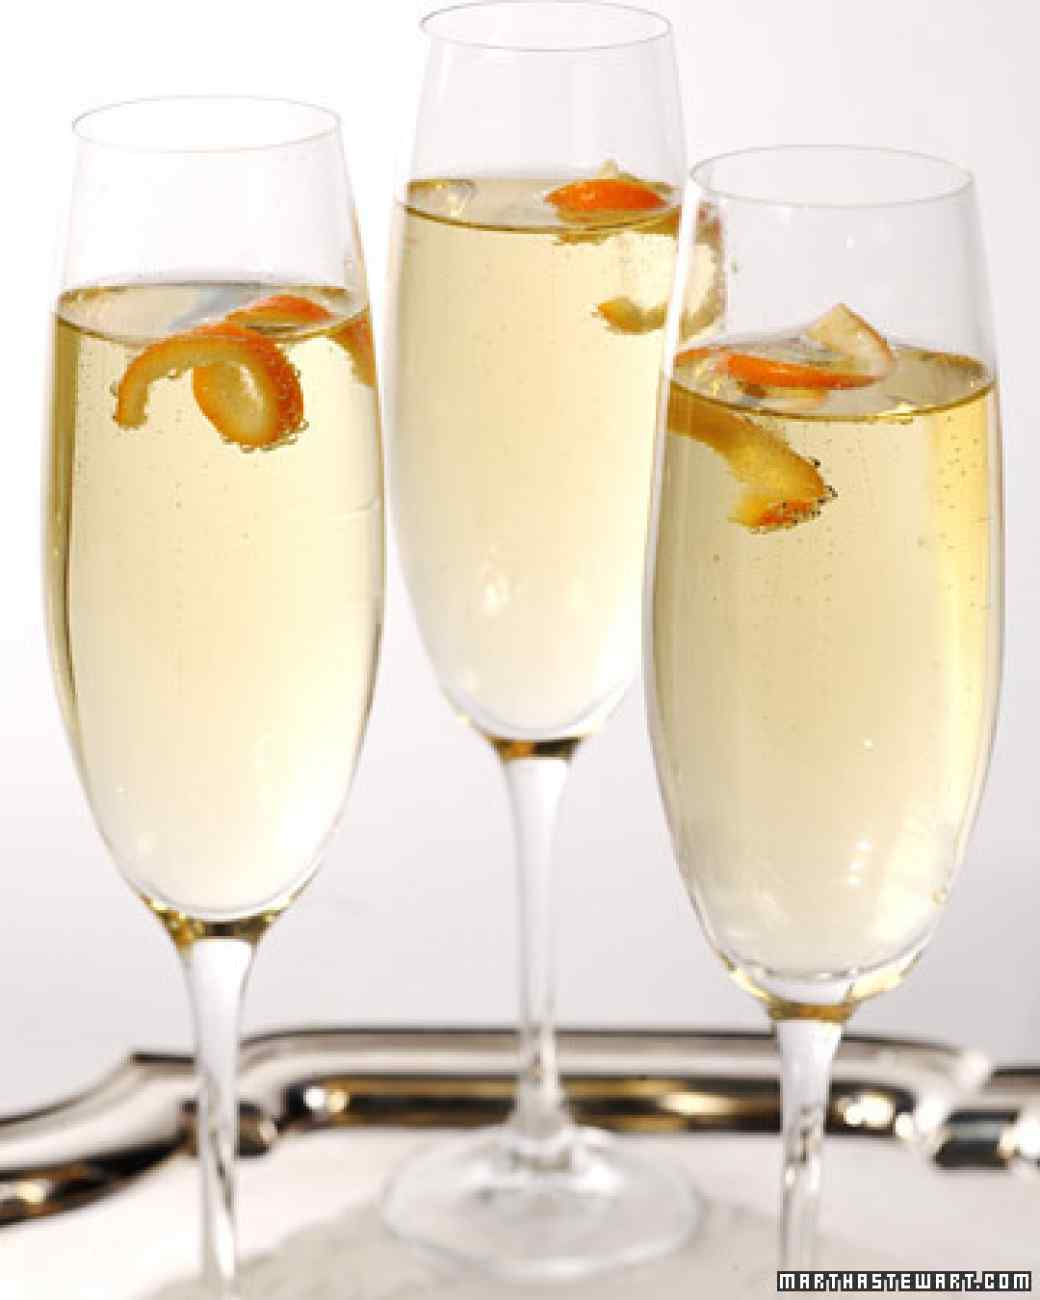 Mandarin Cocktail (cocktail cam mandarin): Đây là thức uống hoàn hảo cho những dịp đặc biệt như tiệc cuối năm. Công thức mandarin cocktail: 30ml Mandarine Napolean (có thể thay bằng loại rượu mùi mandarin khác) + 118ml champagne + vỏ quýt clementine để trang trí.